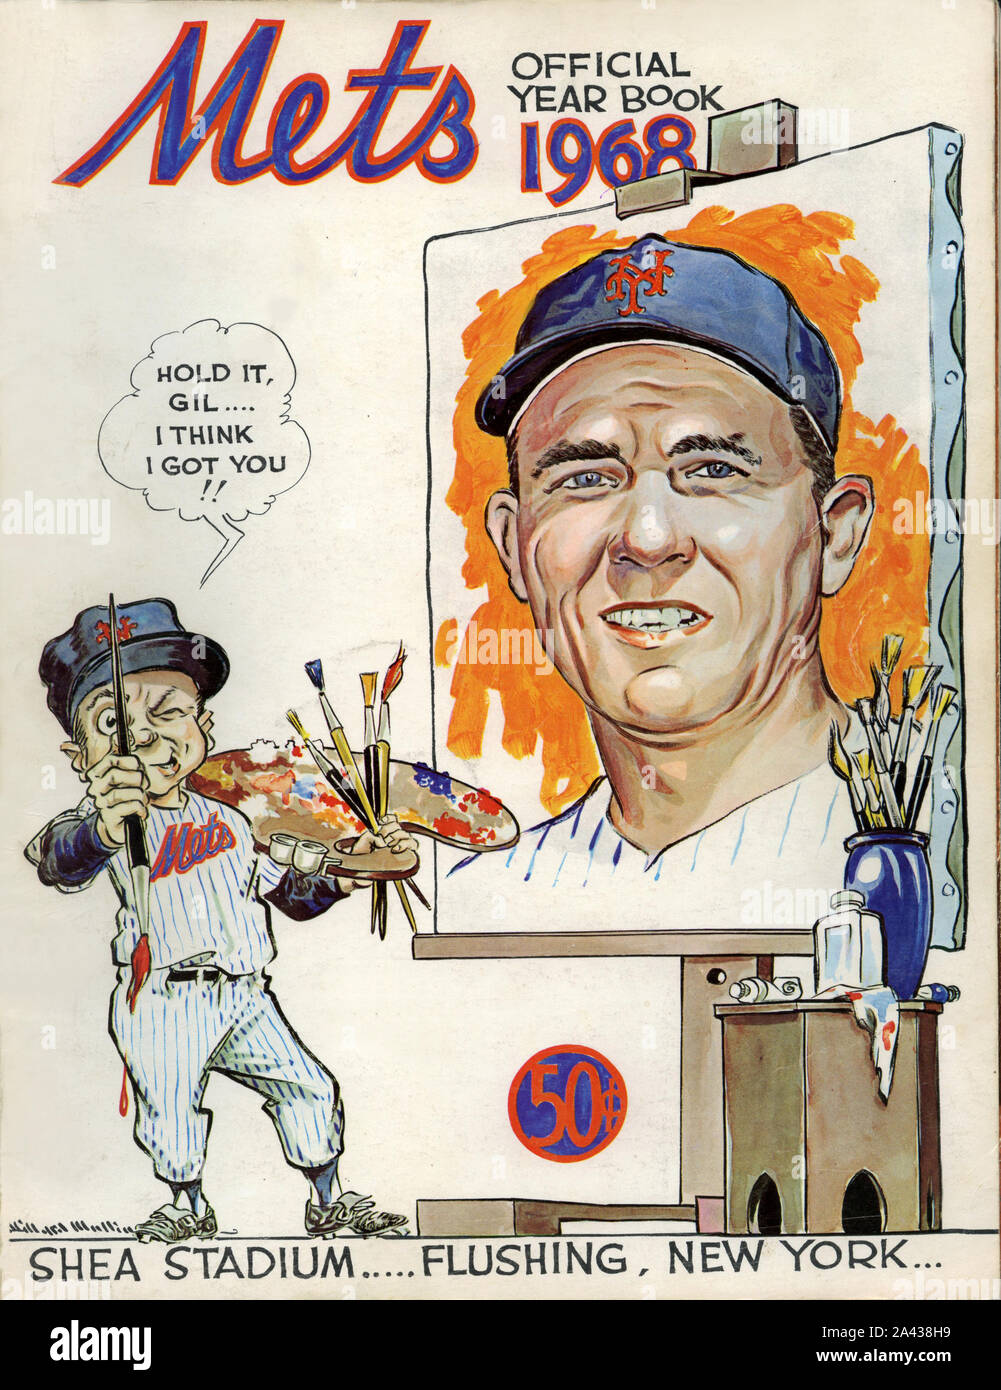 L'annata 1968 New York Mets anno di baseball per la copertina del libro con manager Gil Hodges. Foto Stock